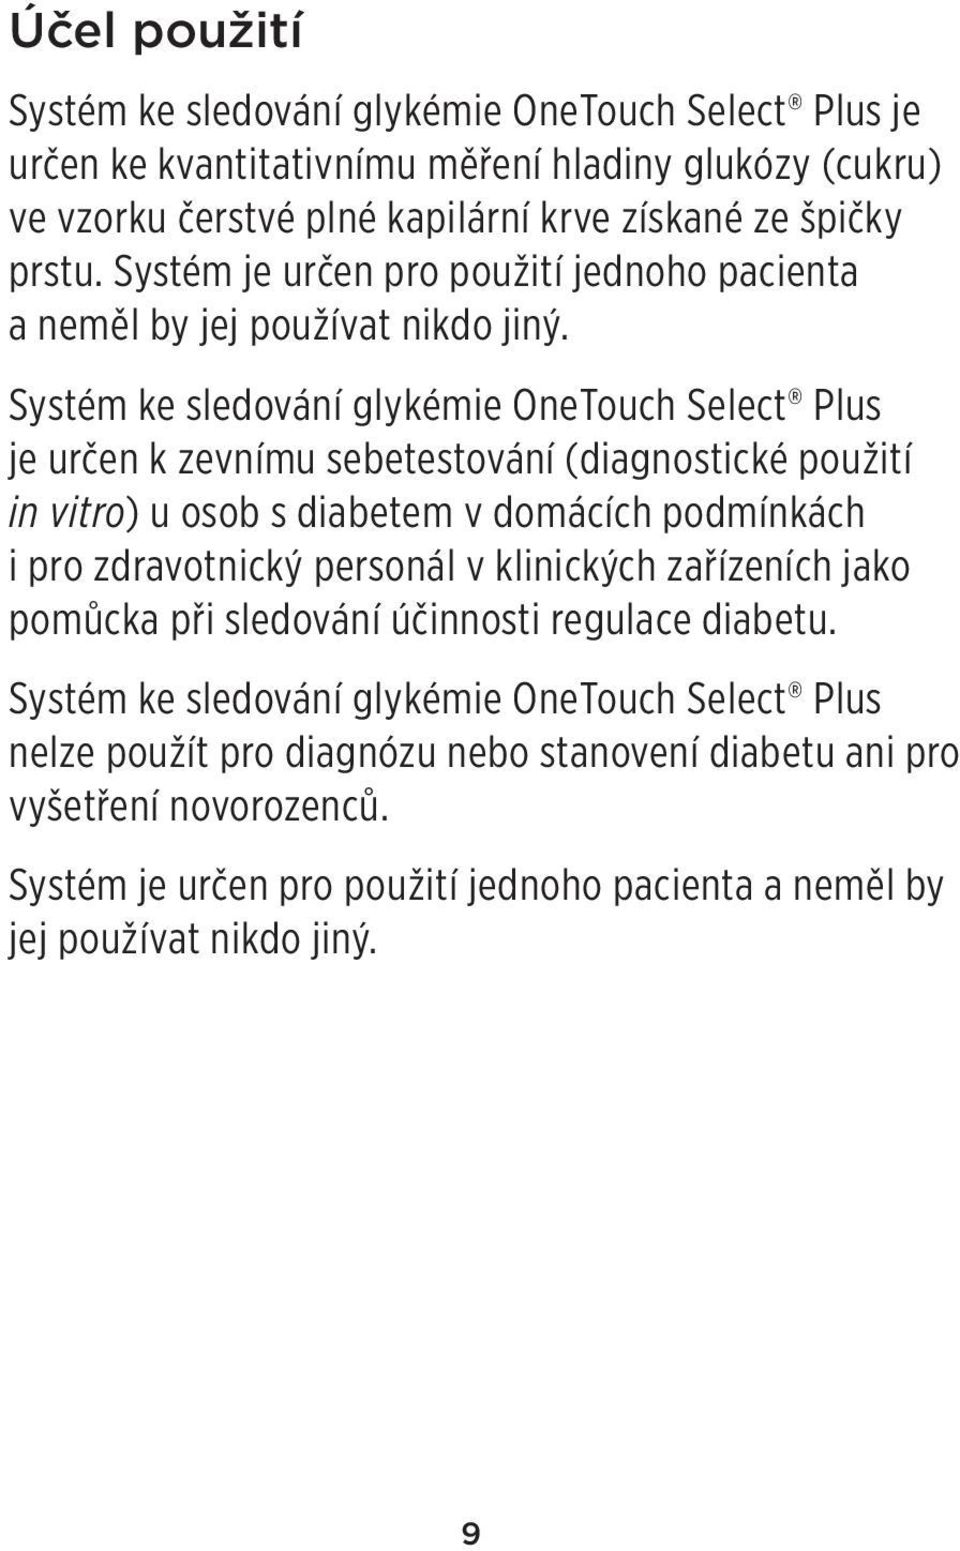 Systém ke sledování glykémie OneTouch Select Plus je určen k zevnímu sebetestování (diagnostické použití in vitro) u osob s diabetem v domácích podmínkách i pro zdravotnický personál v